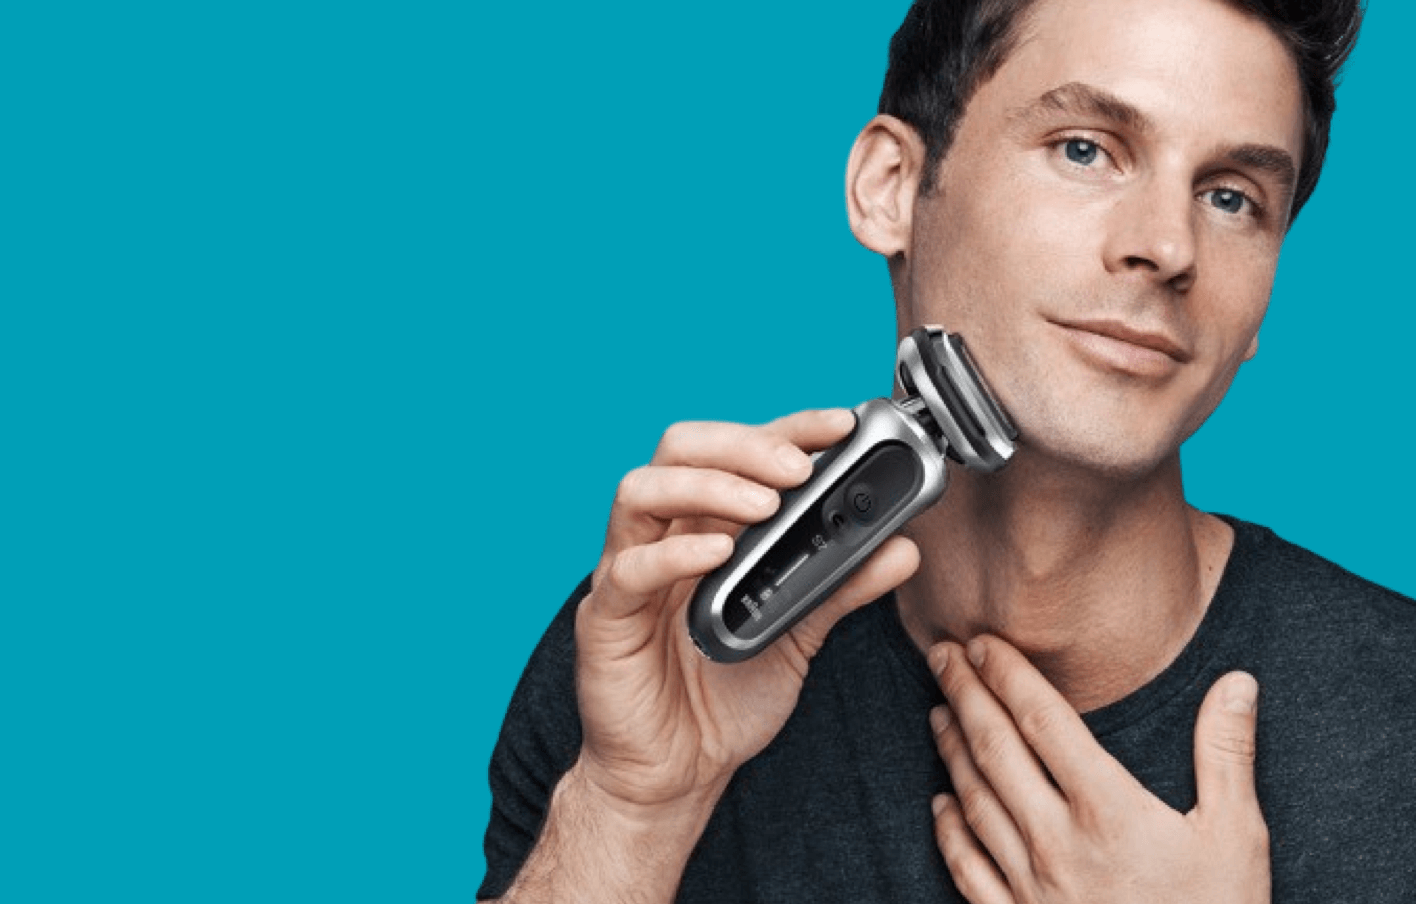 Braun presenta il rasoio elettrico che taglia la barba di 7 giorni